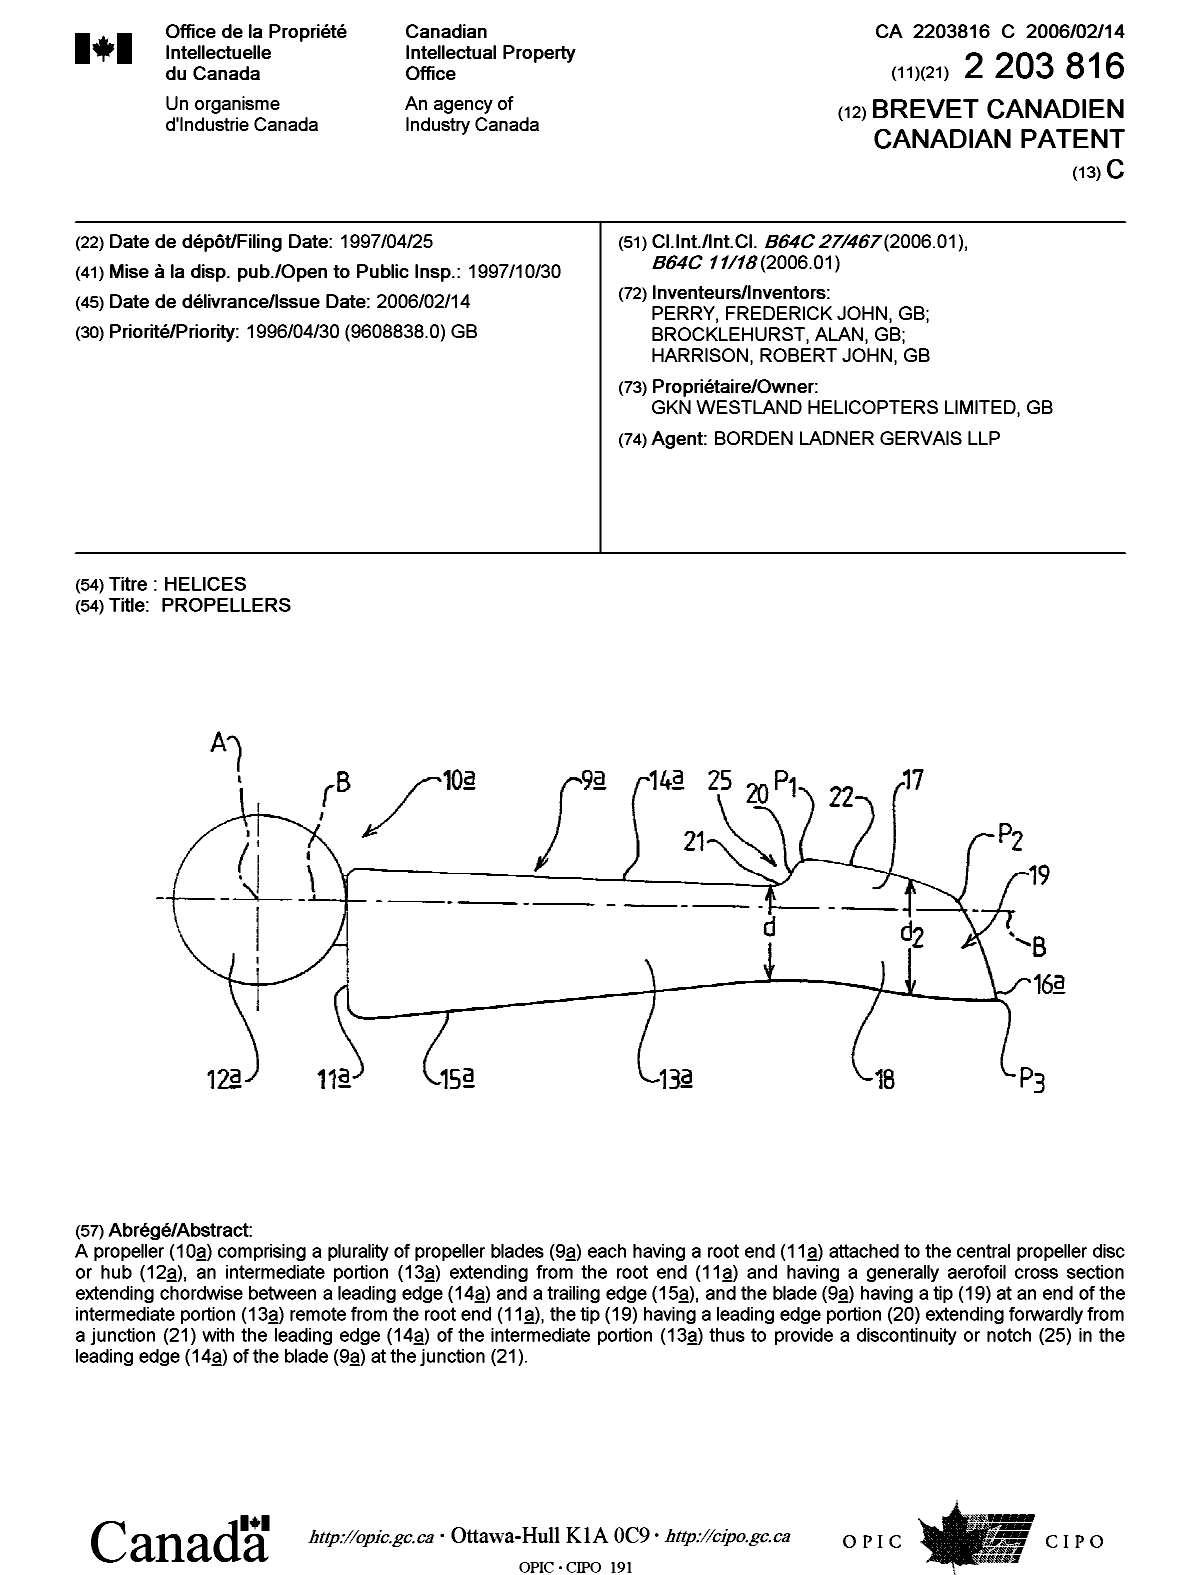 Document de brevet canadien 2203816. Page couverture 20060110. Image 1 de 1